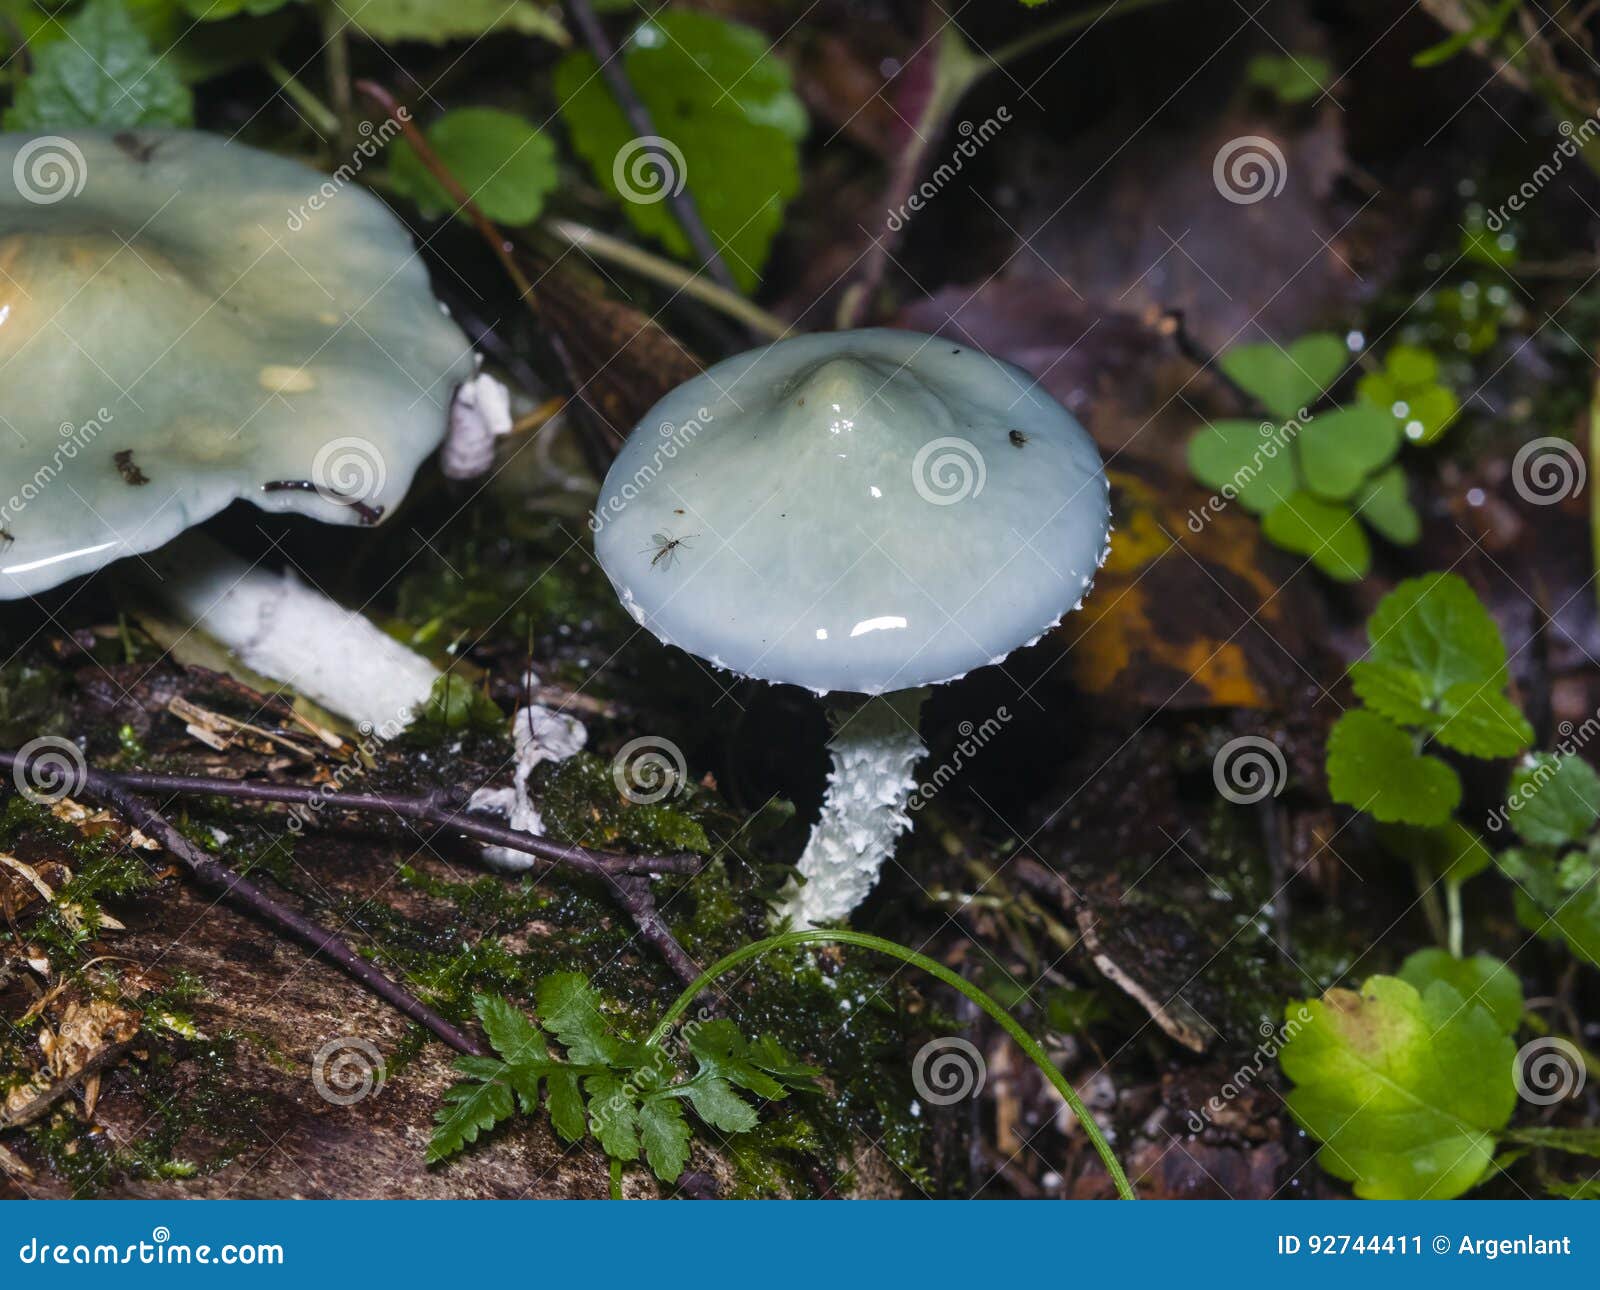 verdigris agaric or stropharia aeruginosa, blue mushroom, close-up, selective focus, shallow dof